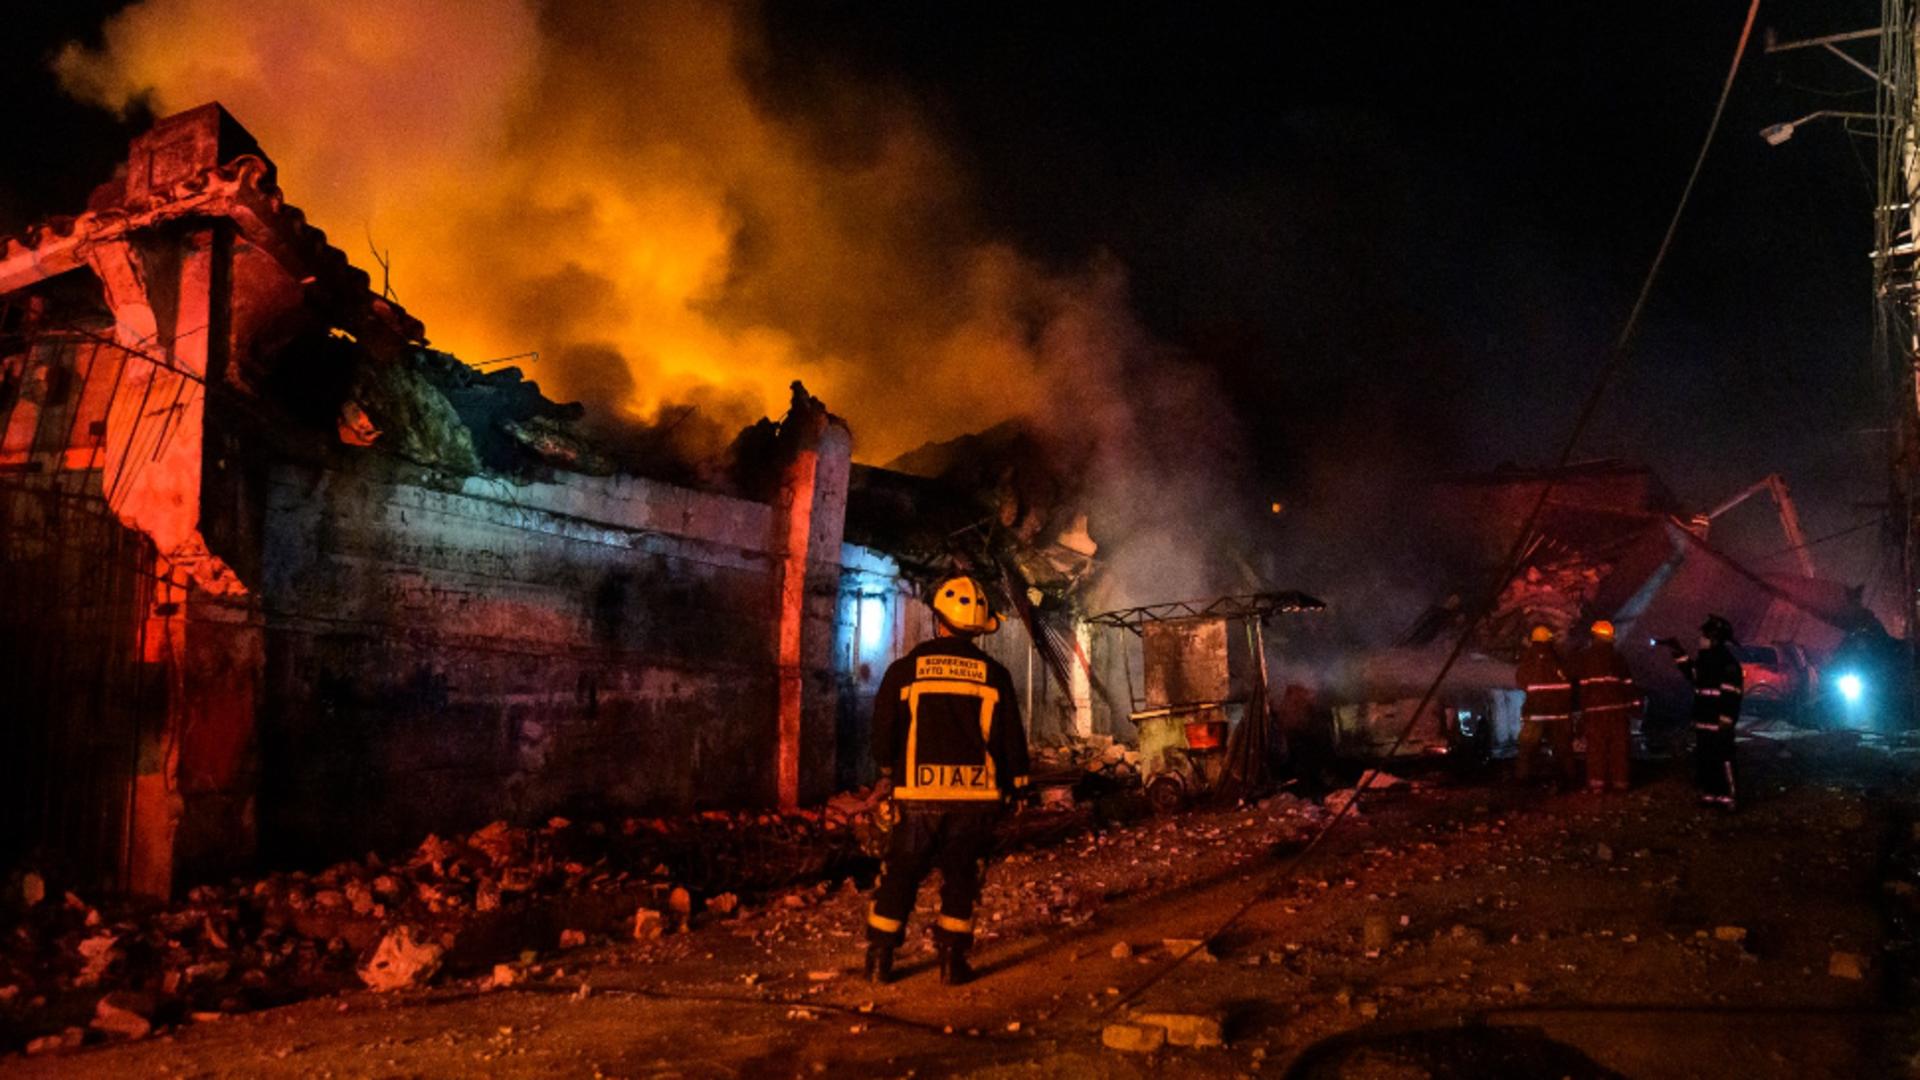 Explozie urmată de incendiu violent, într-o zonă comercială din Republica Dominicană: cel puțin 11 morți, zeci de răniți. Cauza, necunoscută